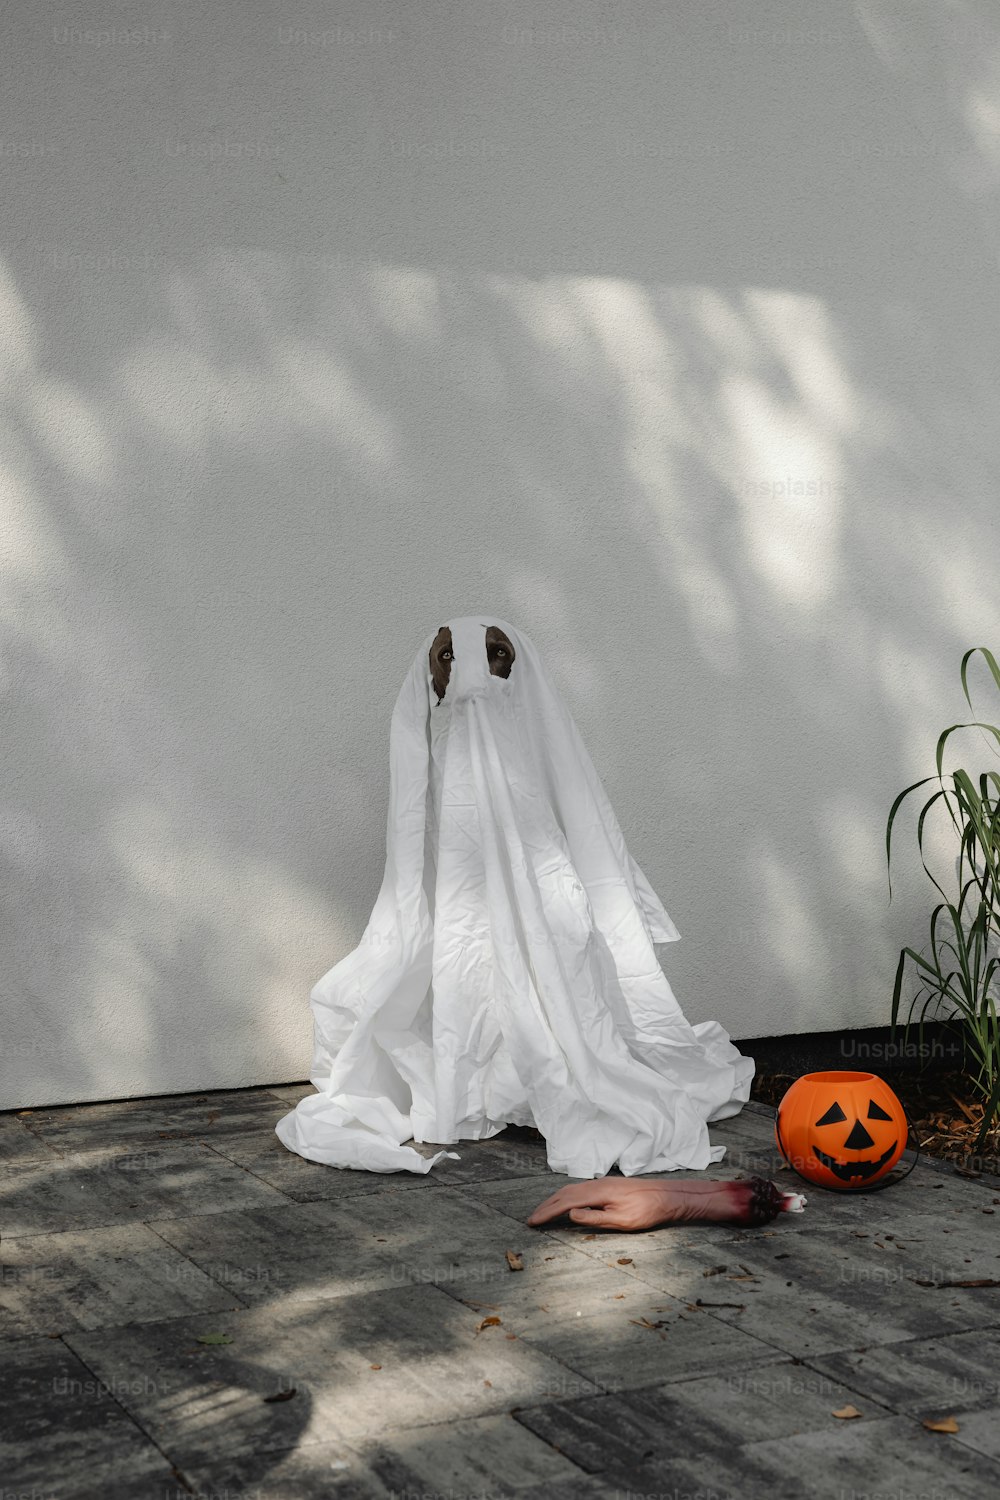 Un fantasma fantasmal sentado en el suelo junto a una calabaza